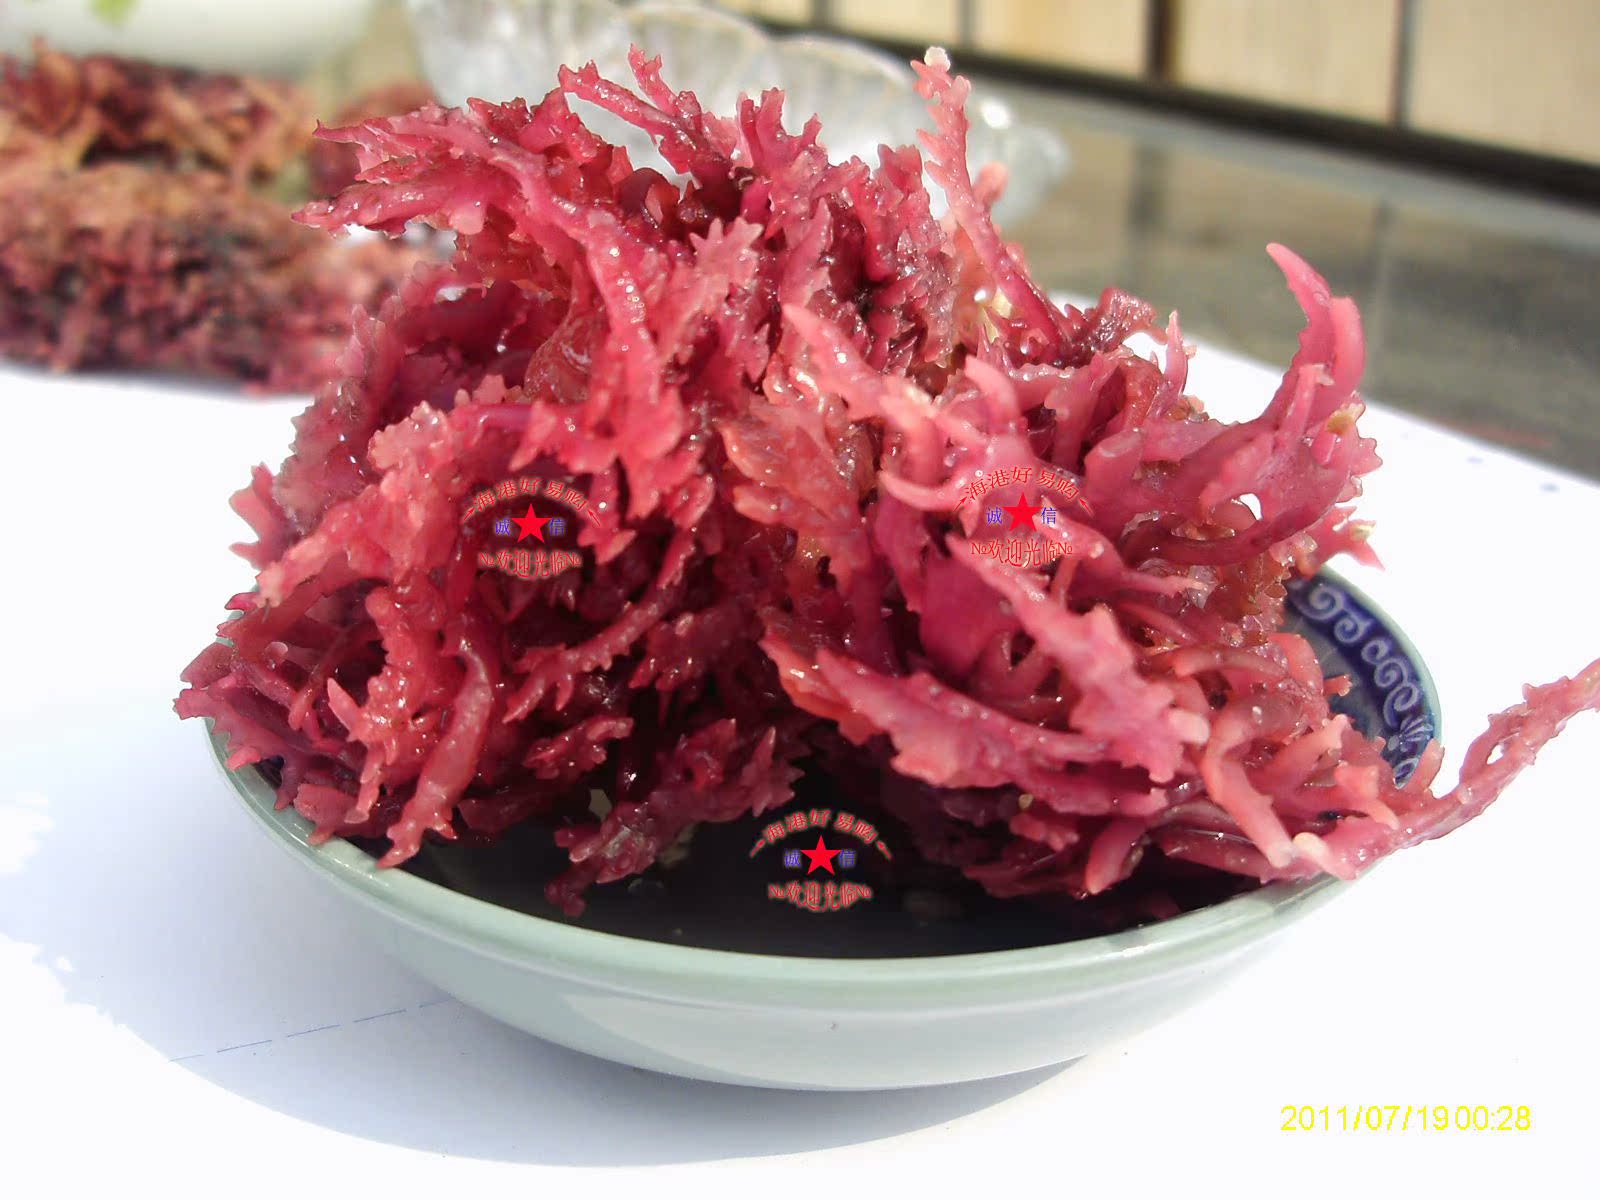 海底燕窝 血珊瑚 天然海藻 超高胶原蛋白! 珊瑚藻 红珊瑚 干货